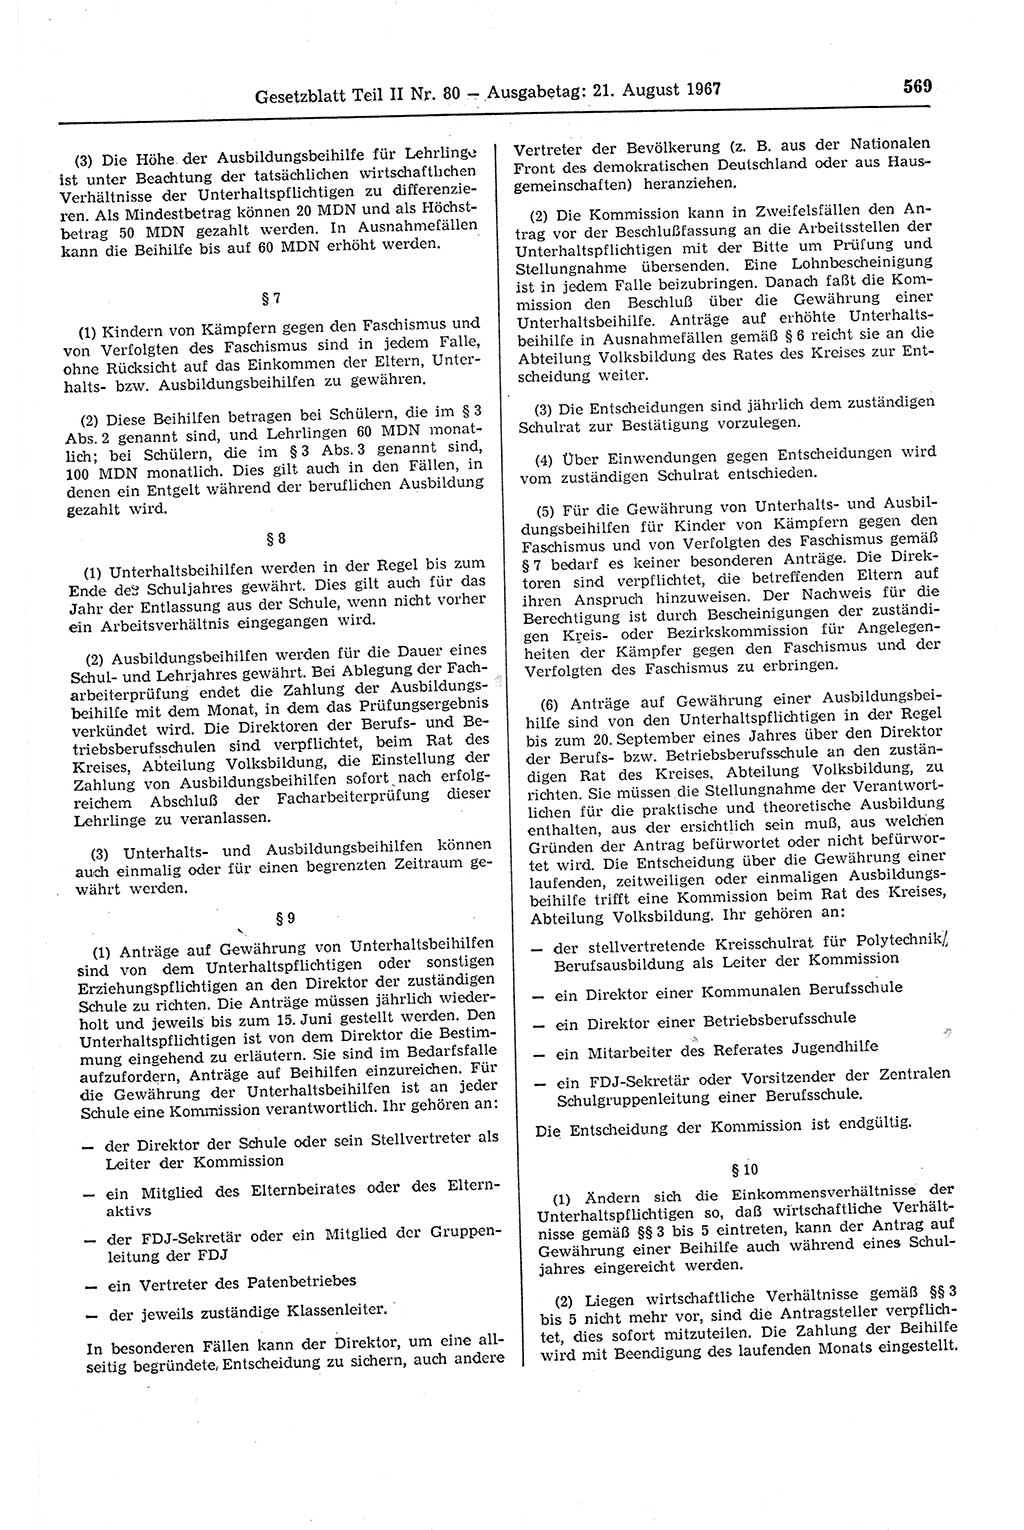 Gesetzblatt (GBl.) der Deutschen Demokratischen Republik (DDR) Teil ⅠⅠ 1967, Seite 569 (GBl. DDR ⅠⅠ 1967, S. 569)